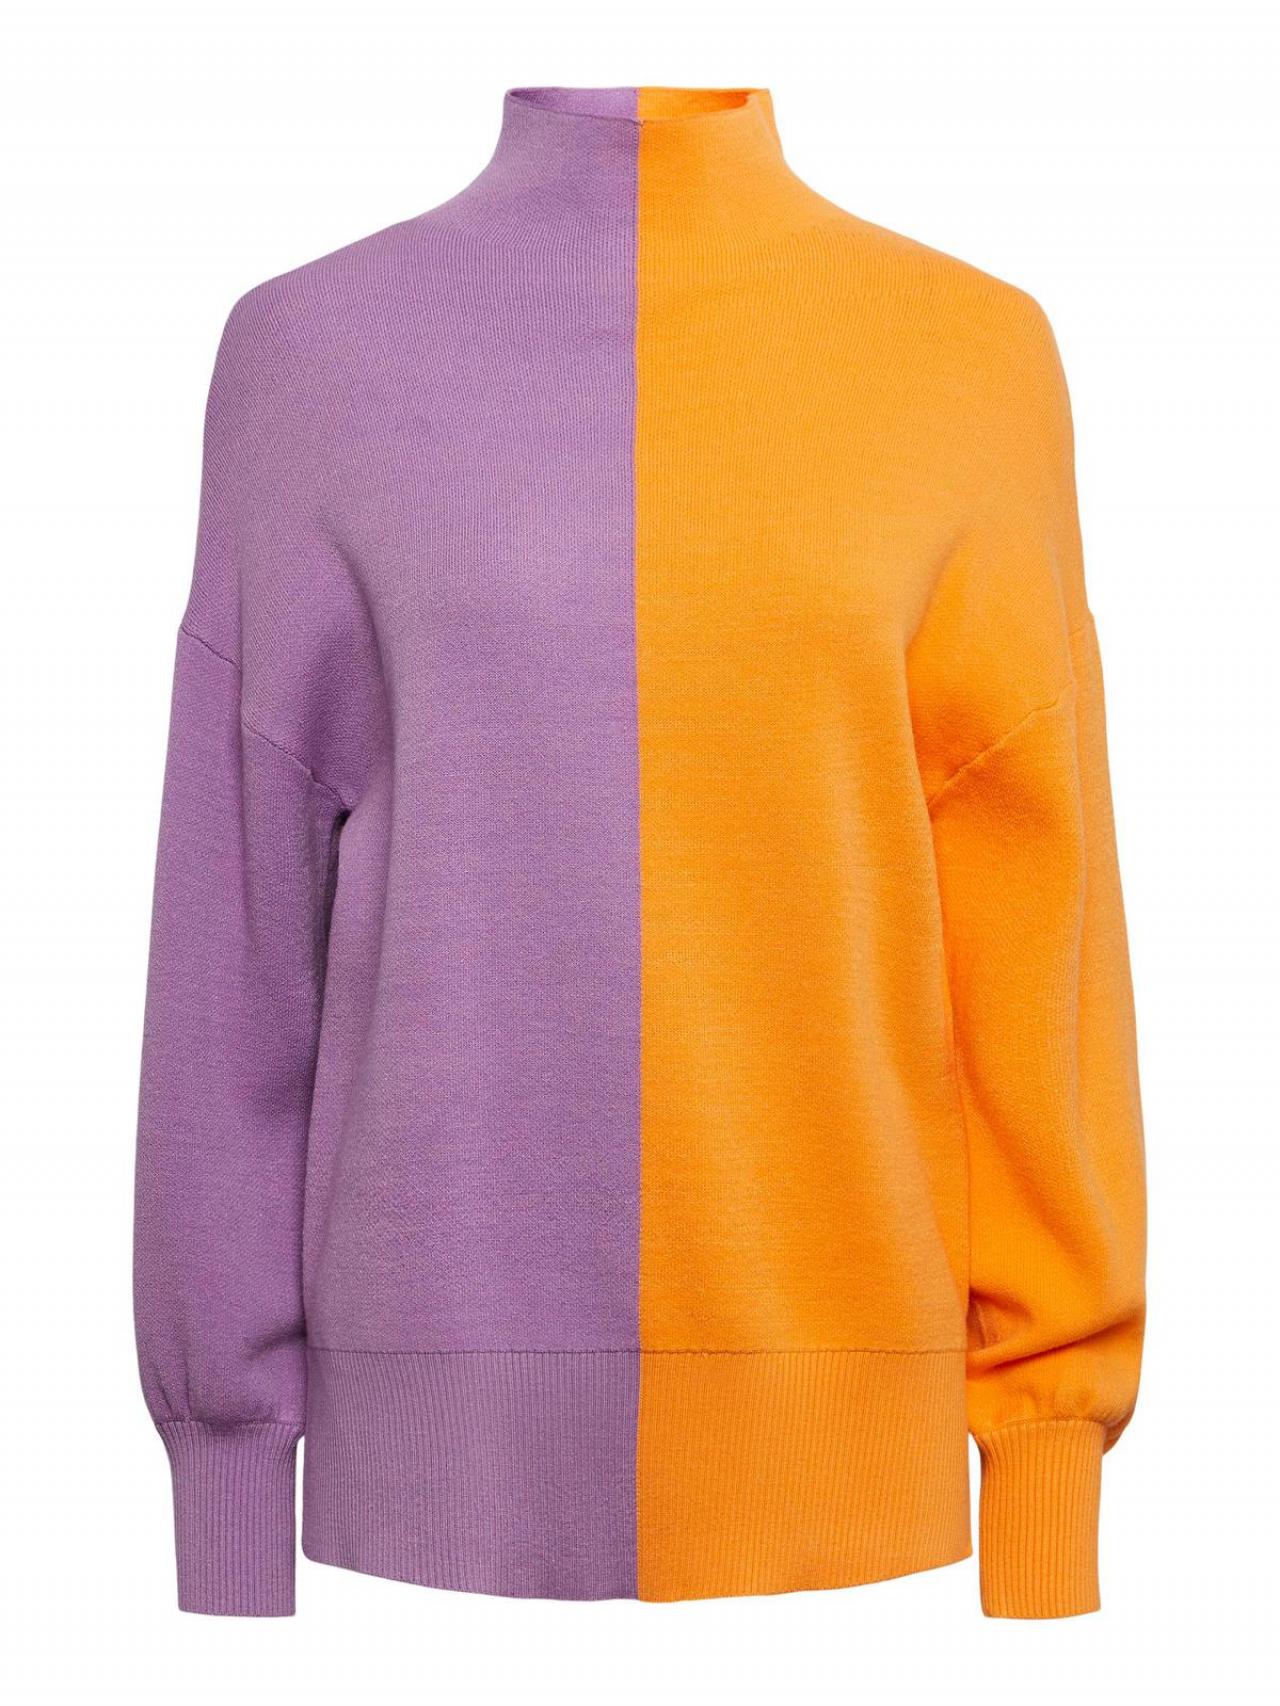 Tweekleurige trui van Y.A.S. (58 euro).